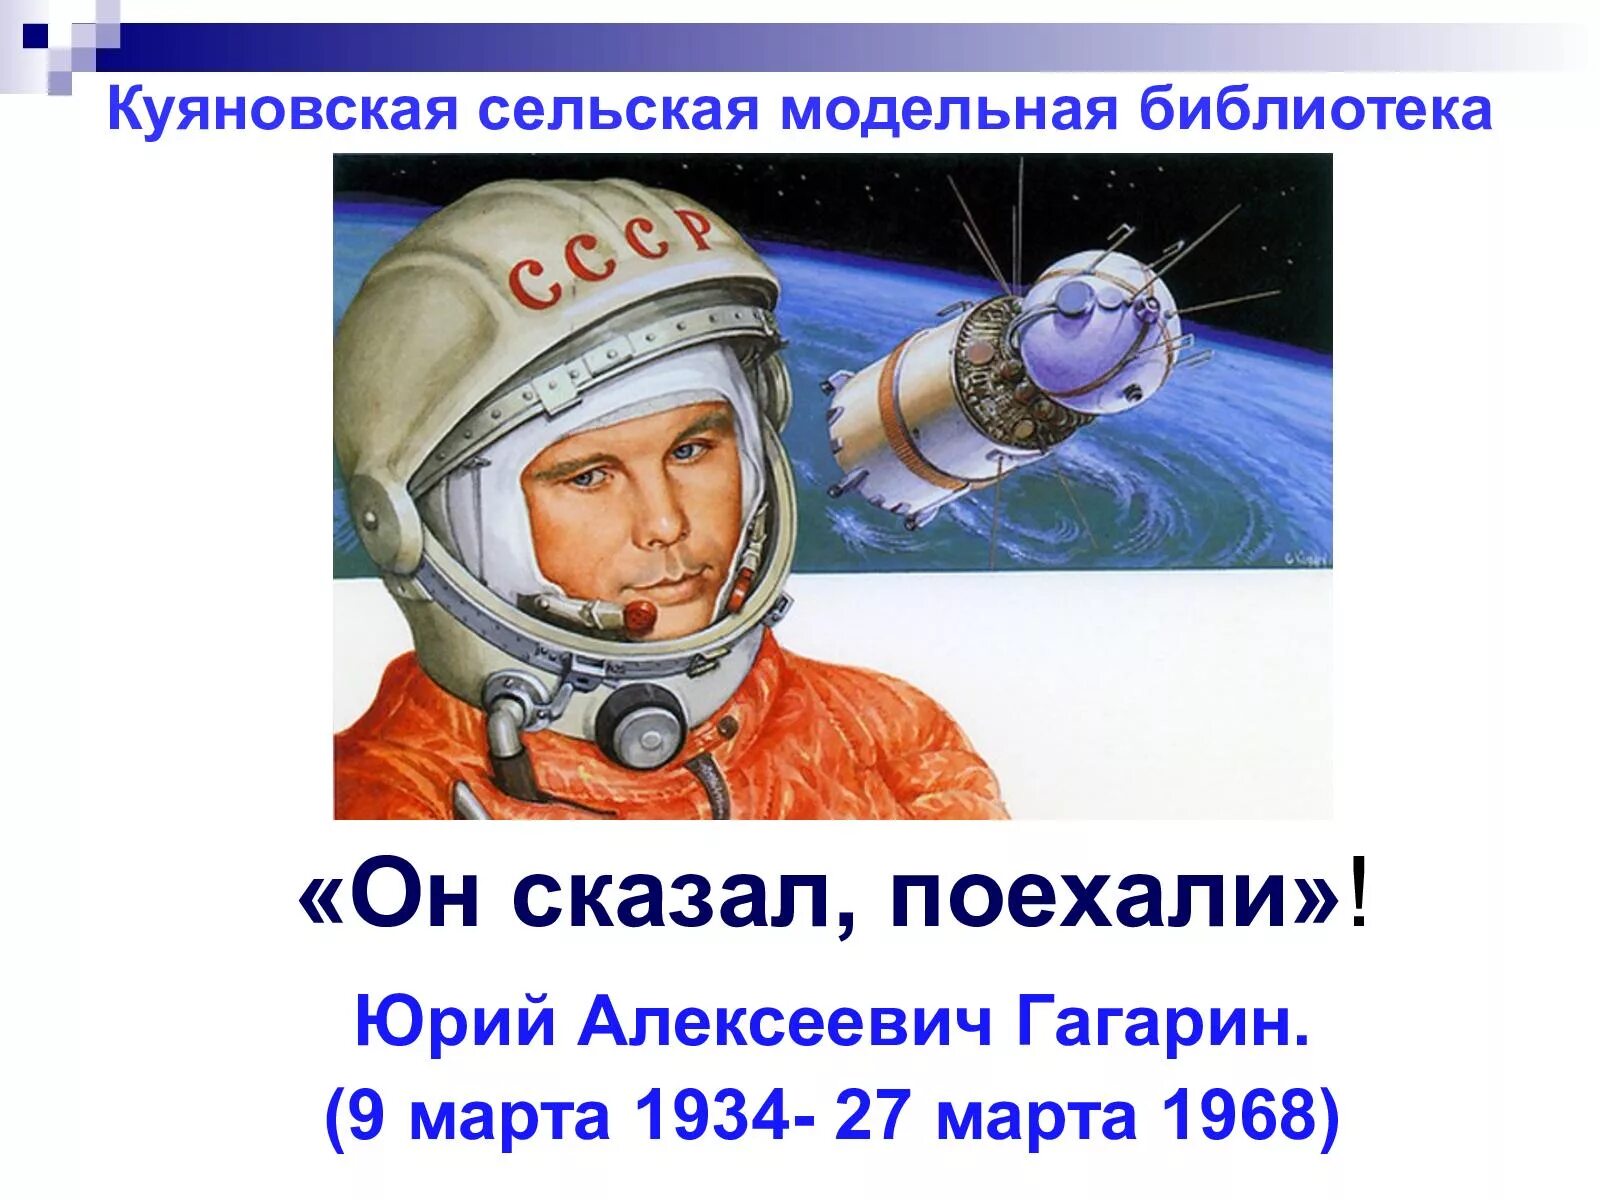 Он сказал поехали. Гагарин сказал поехали. День космонавтики. Он сказал поехали про гагарина